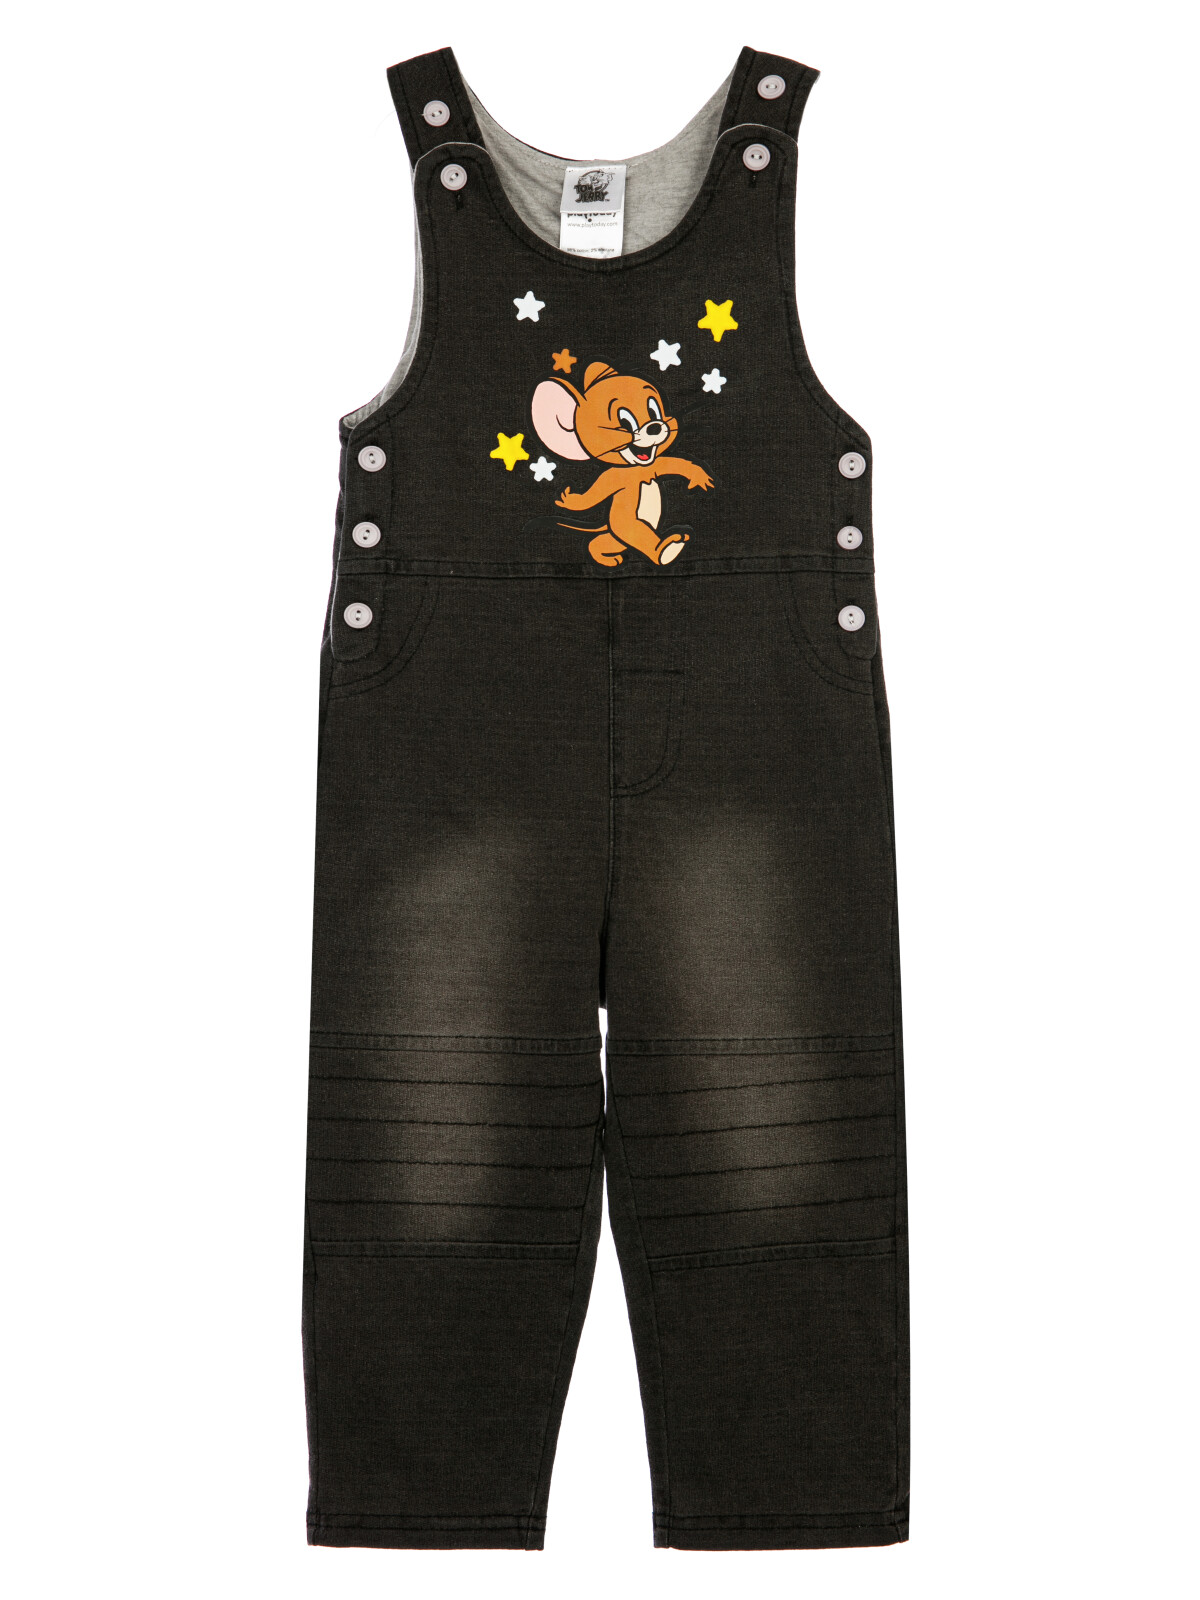 Комбинезон детский текстильный джинсовый для мальчиков PlayToday, черный,цветной, 80